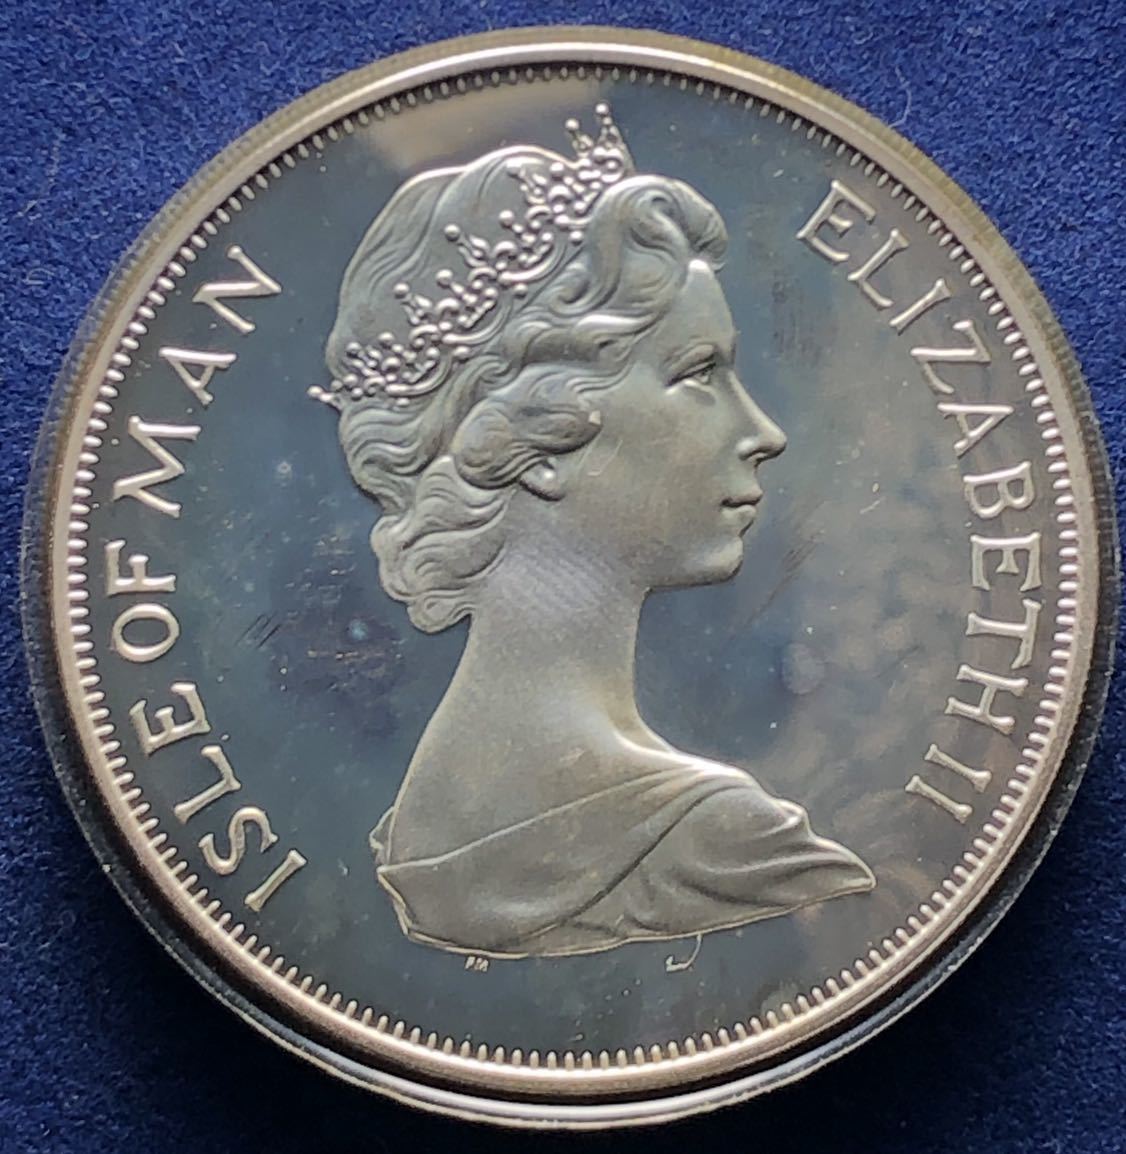  原文:イギリス領マン島銀貨 1952年 プルーフ 28.5g エリザベス2世 jubilee head